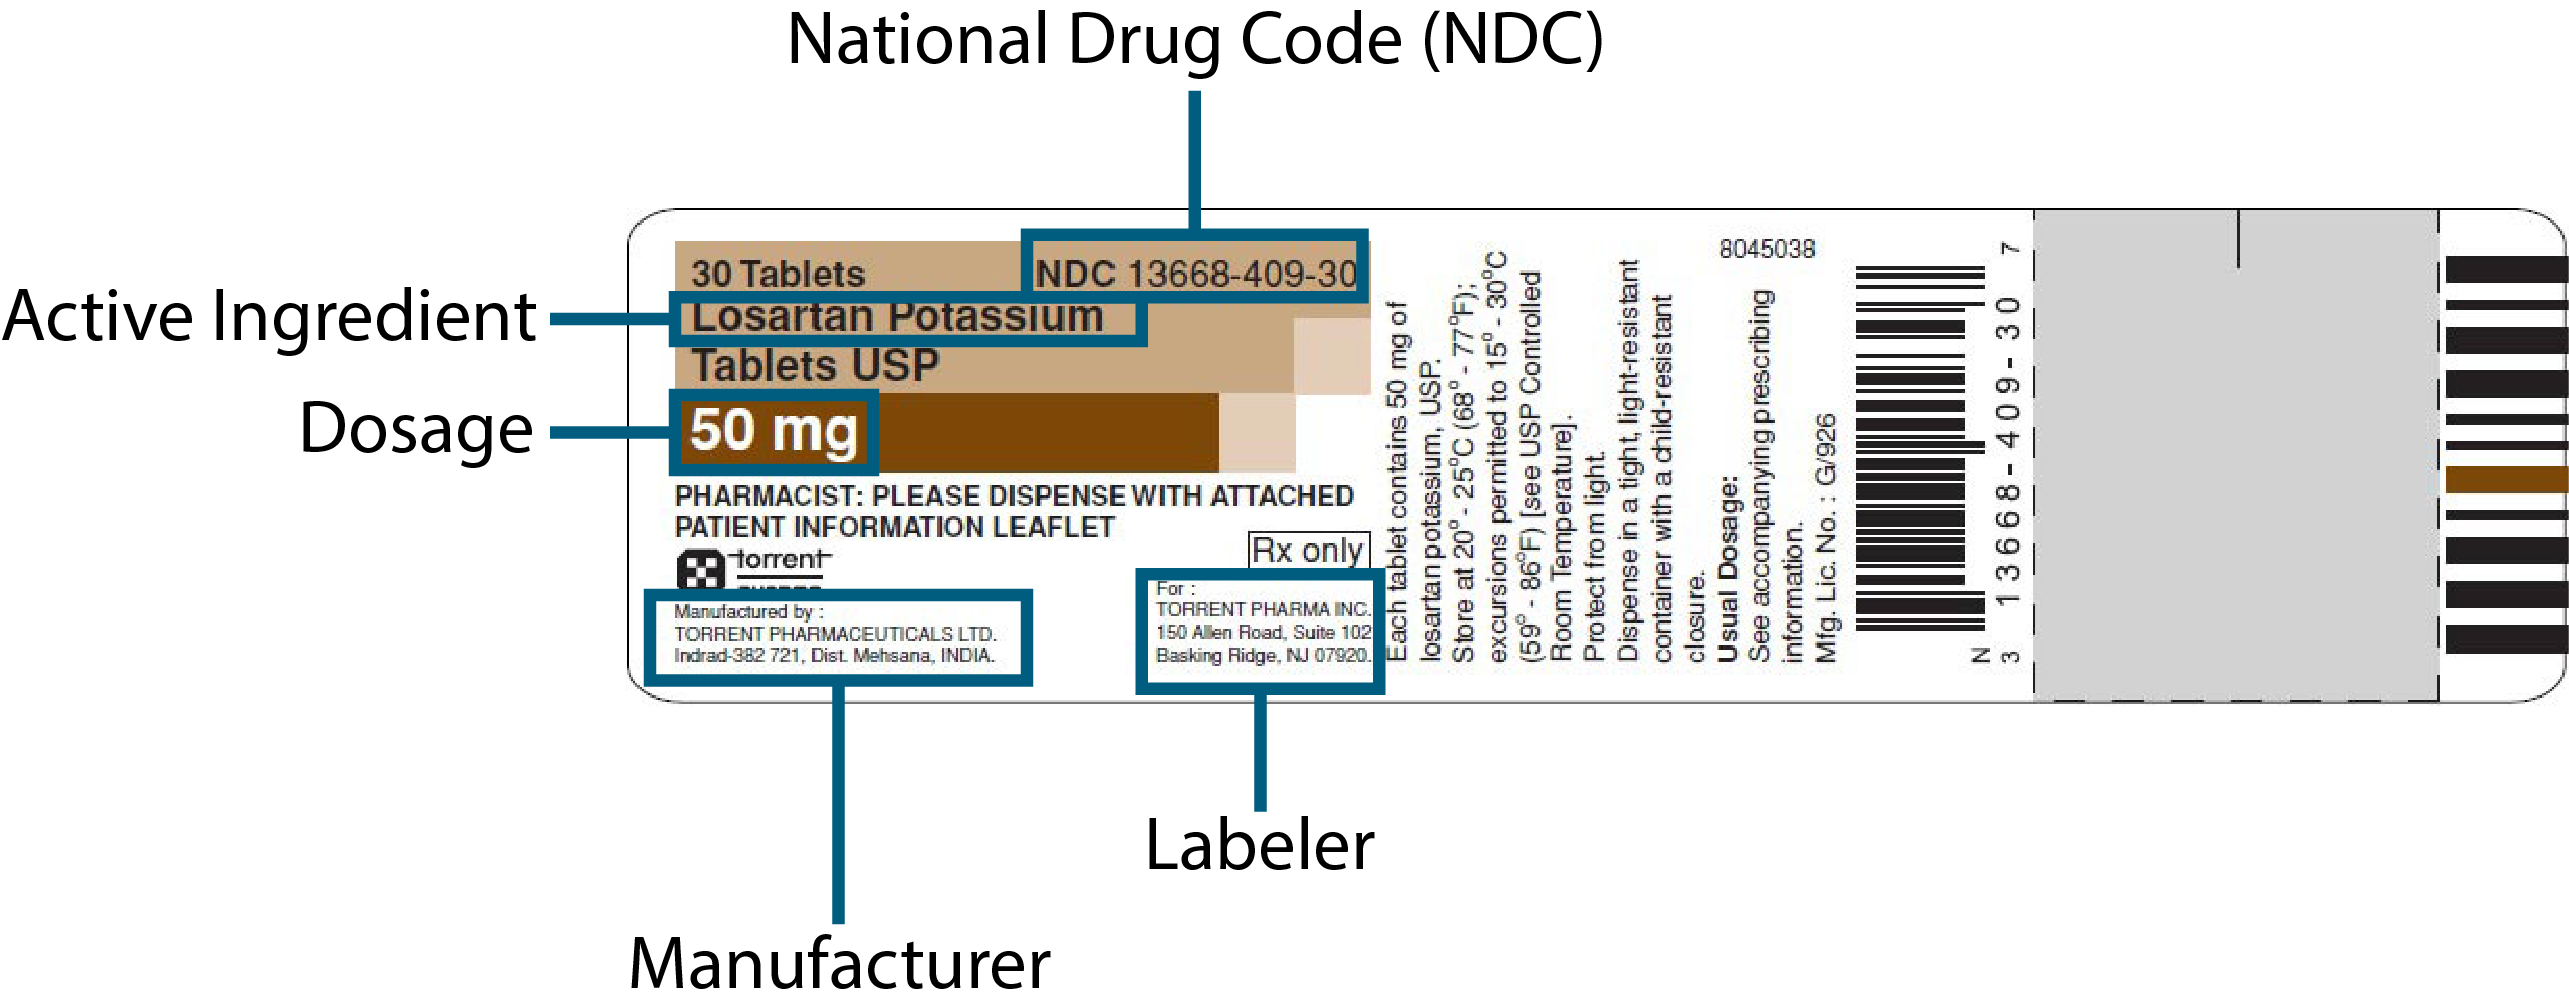 Illustration depicting parts of a drug label: NDC, Manufacturer, Labeler, Dosage, Active ingredient